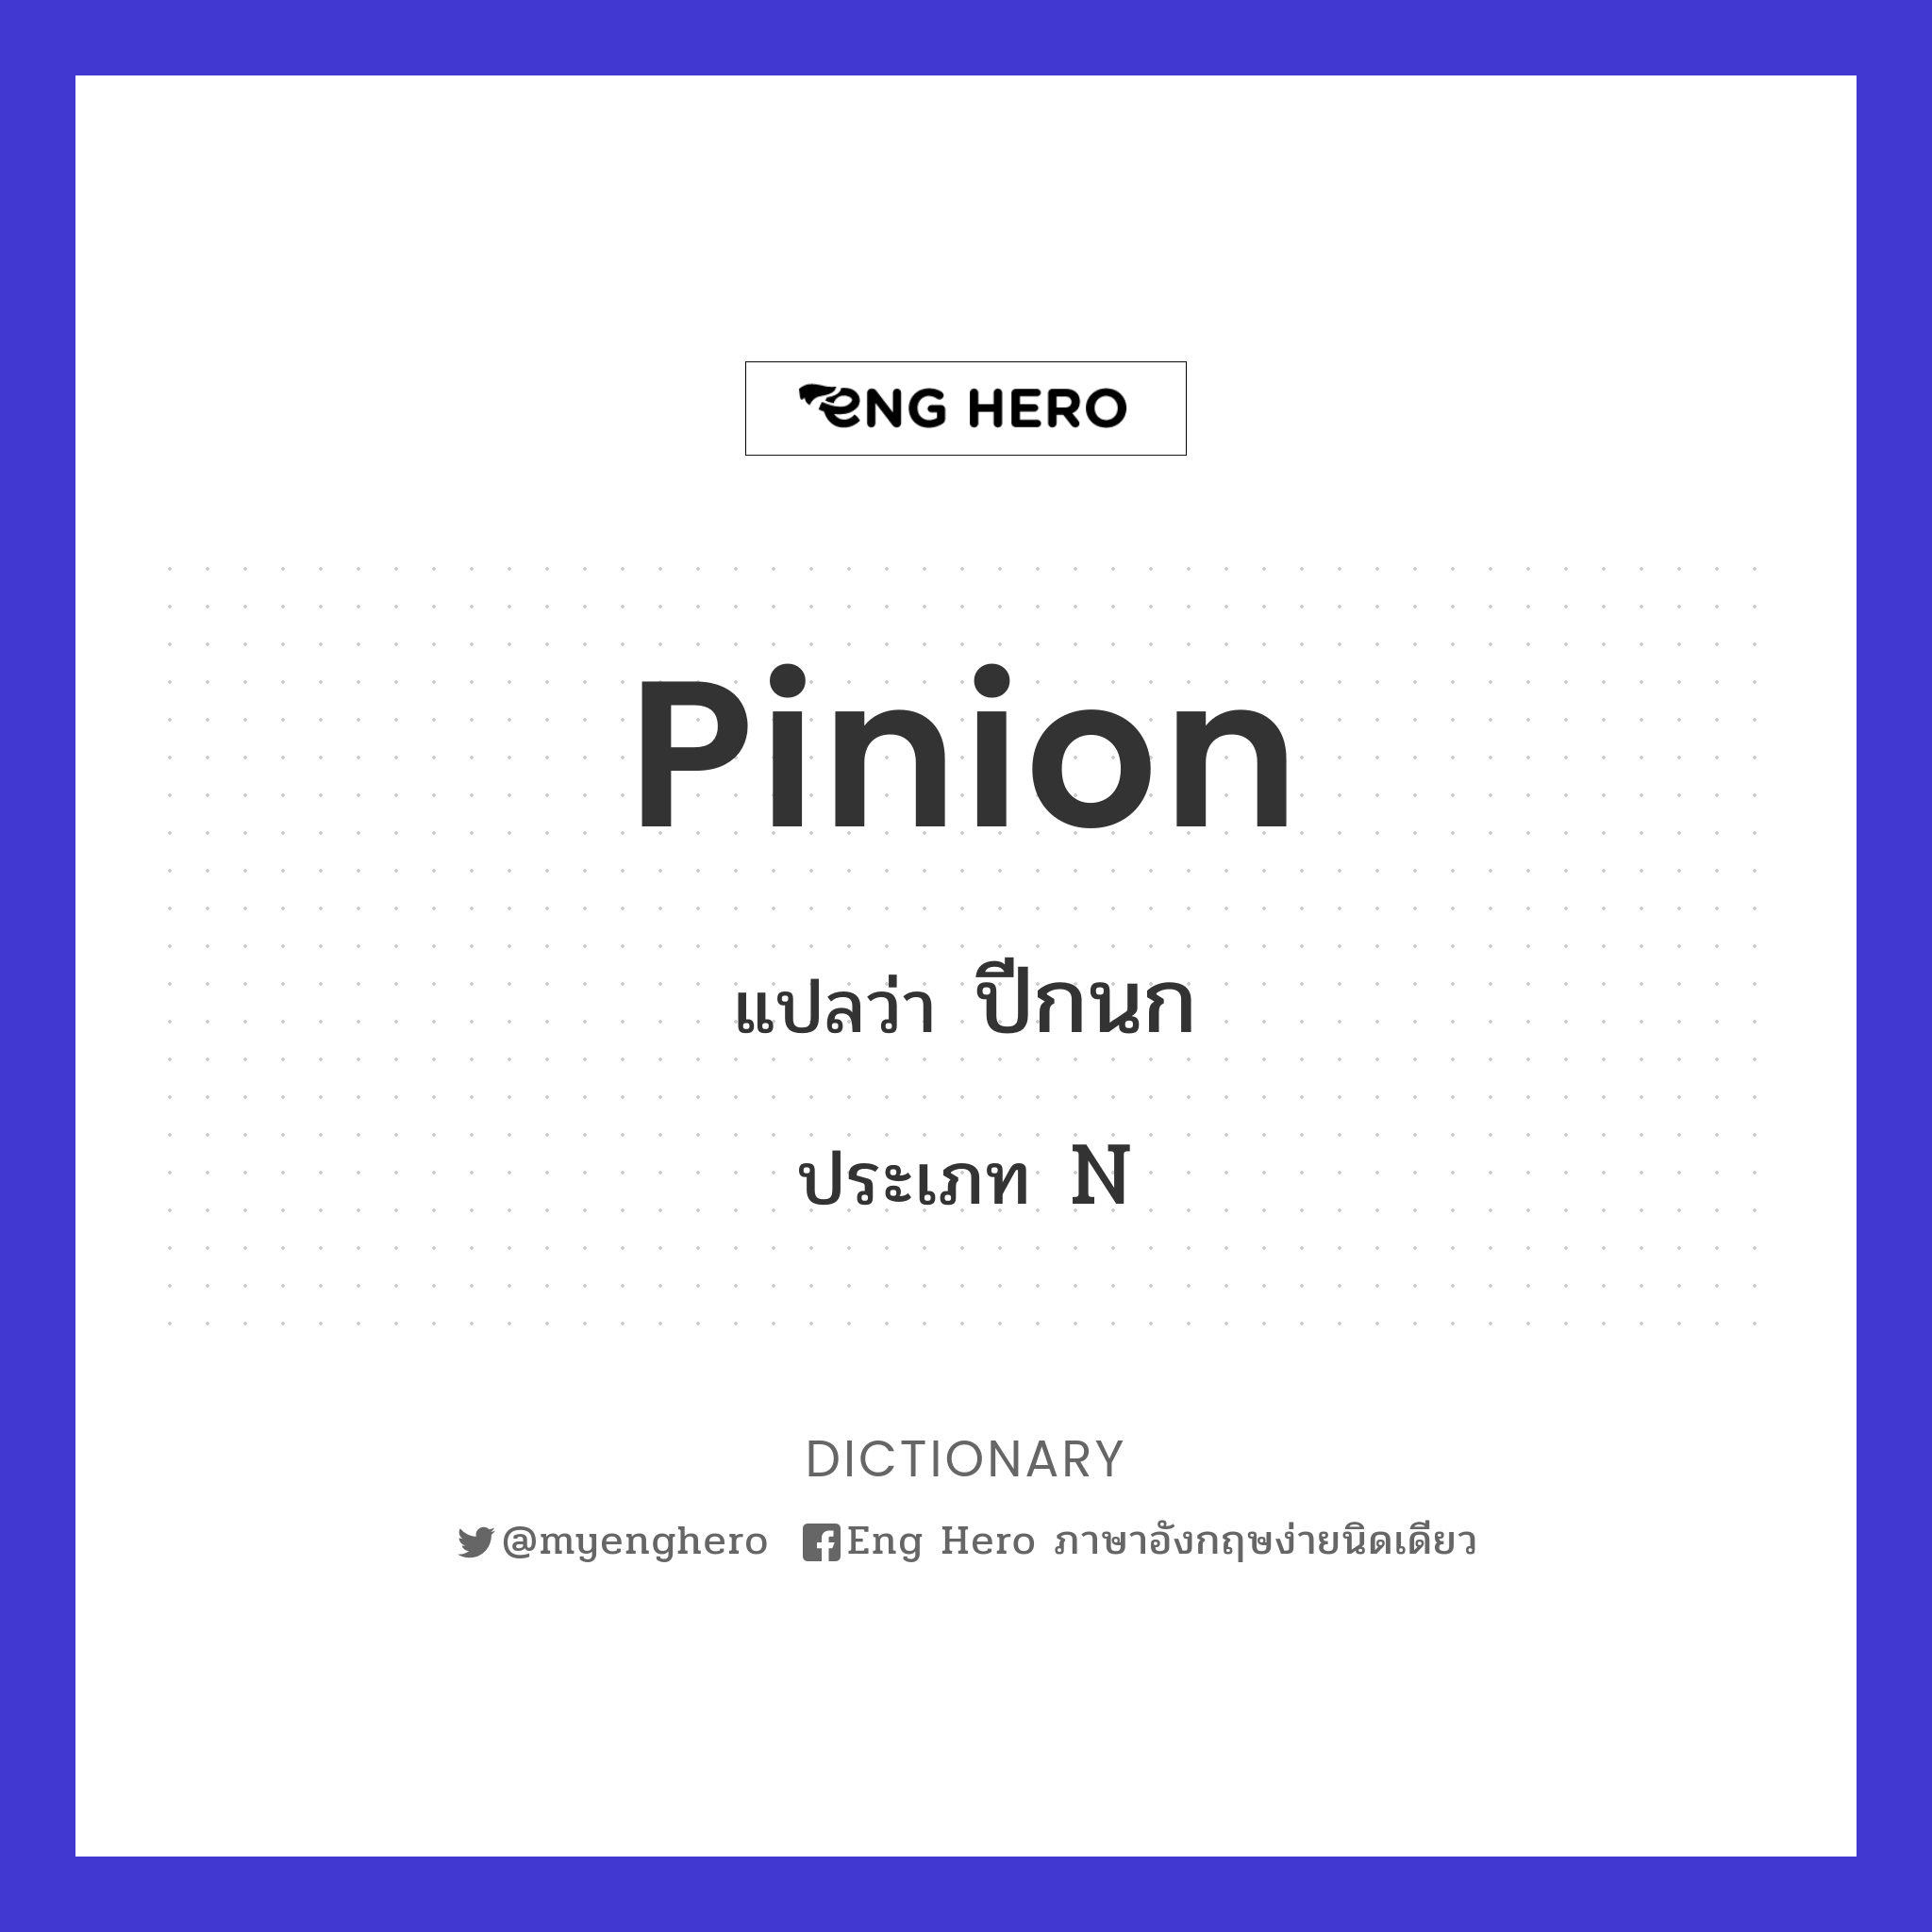 pinion